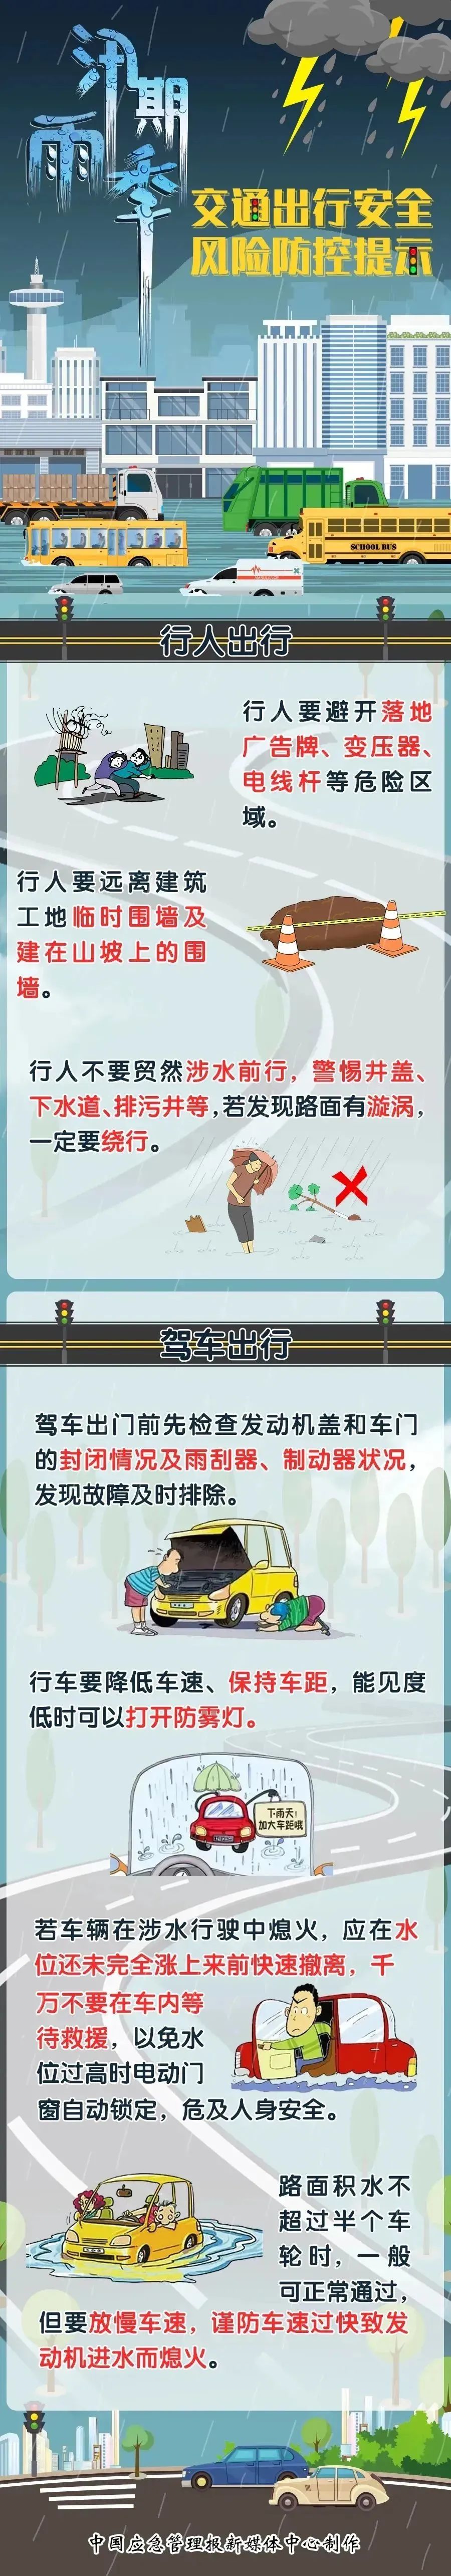 北京地铁16号线丰台站将与国铁换乘丽泽商务区站年底暂缓开通新人教版高中物理目录